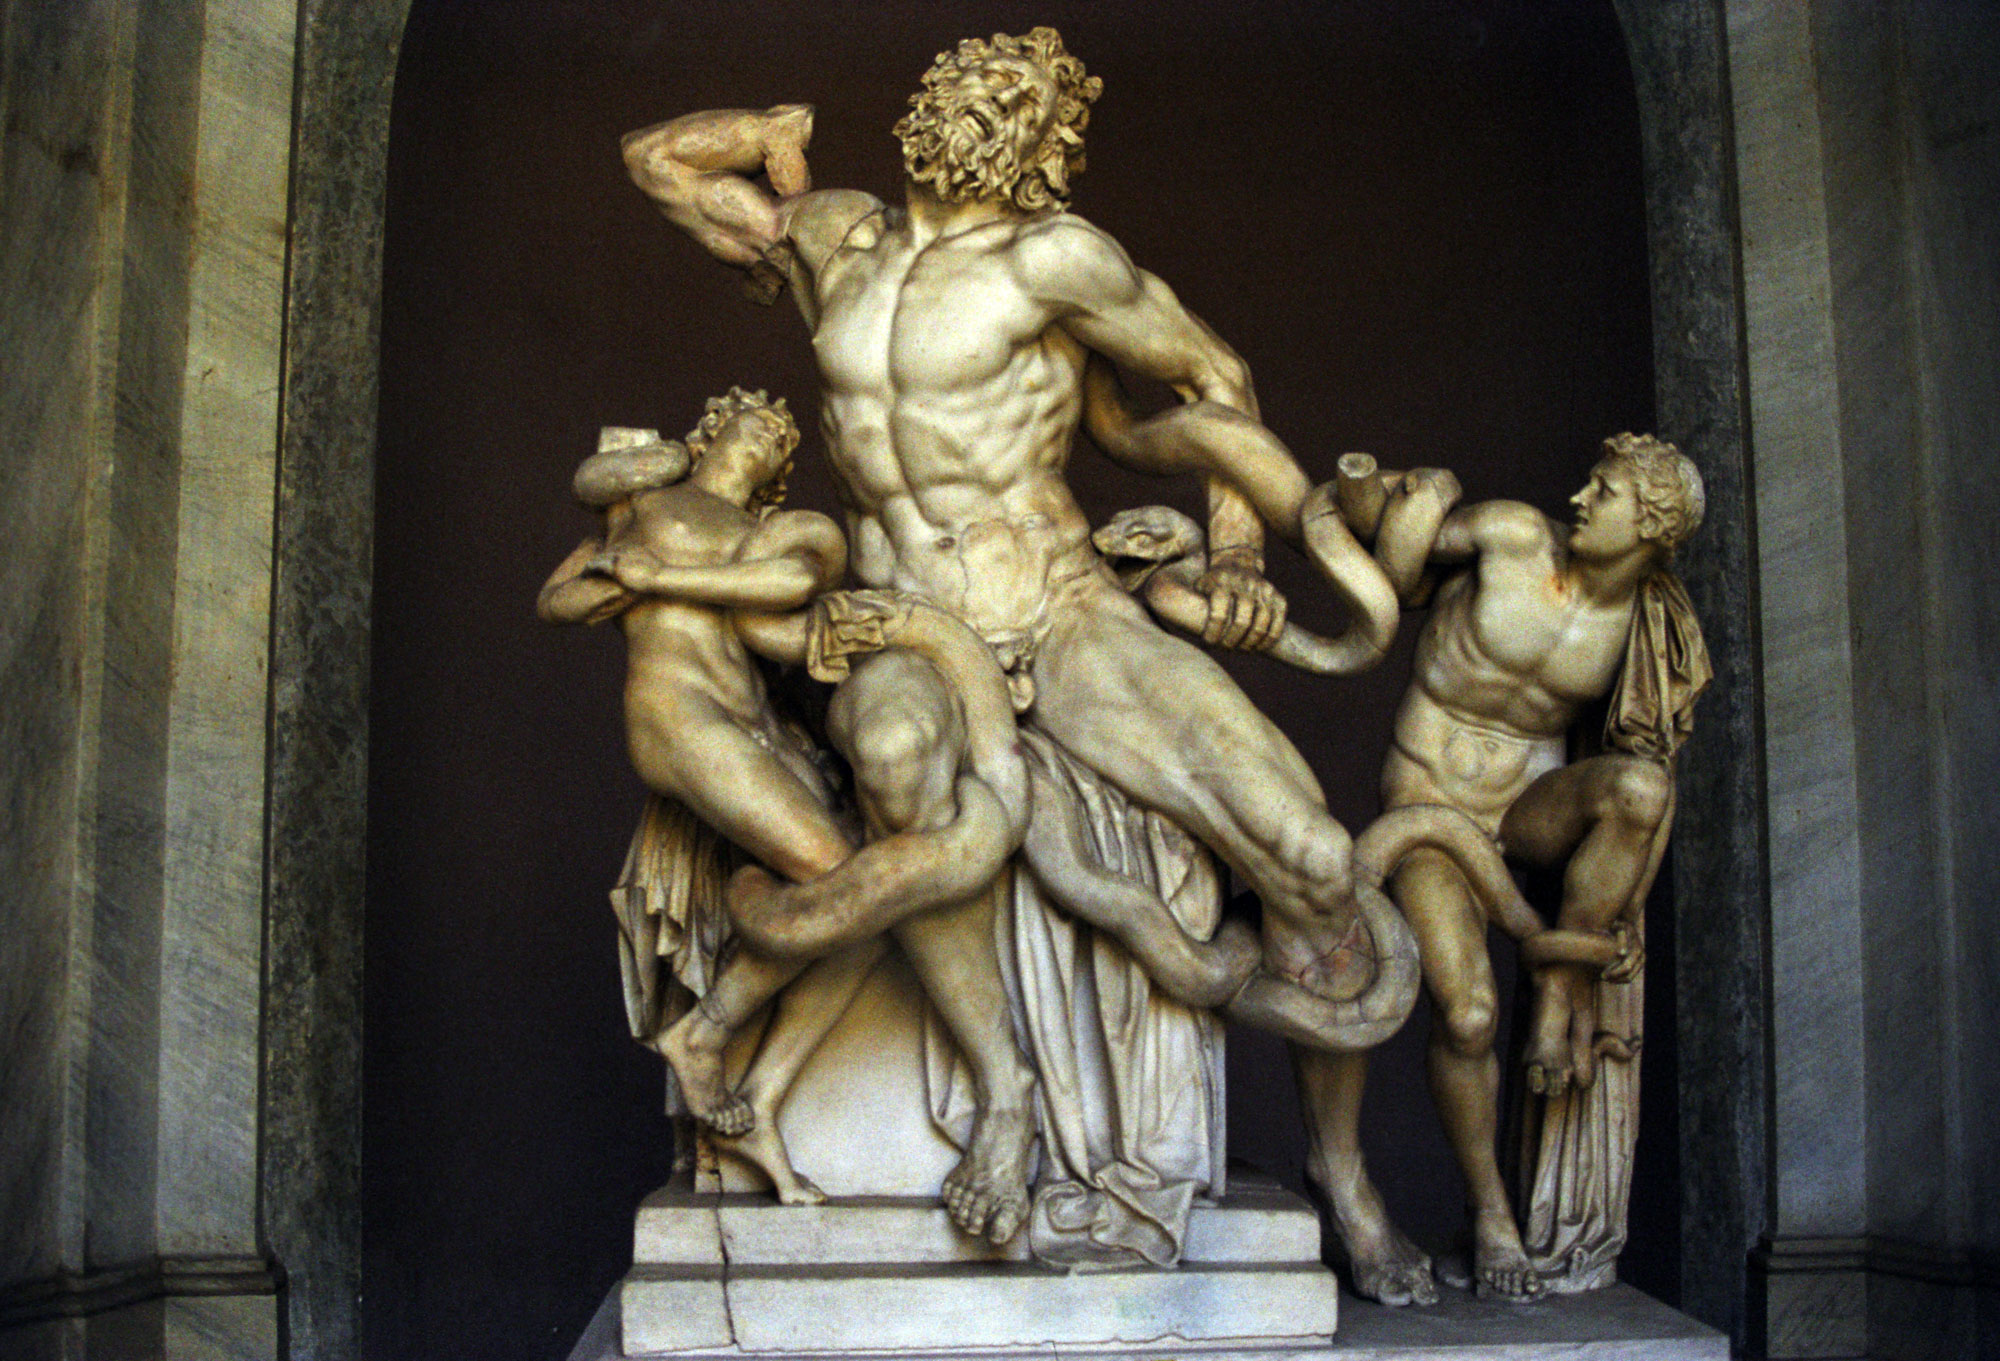 'Laocoonte e i suoi figli'', Agesandro, Atanodoro e Polidoro, marmo, I d.C., Musei Vaticani